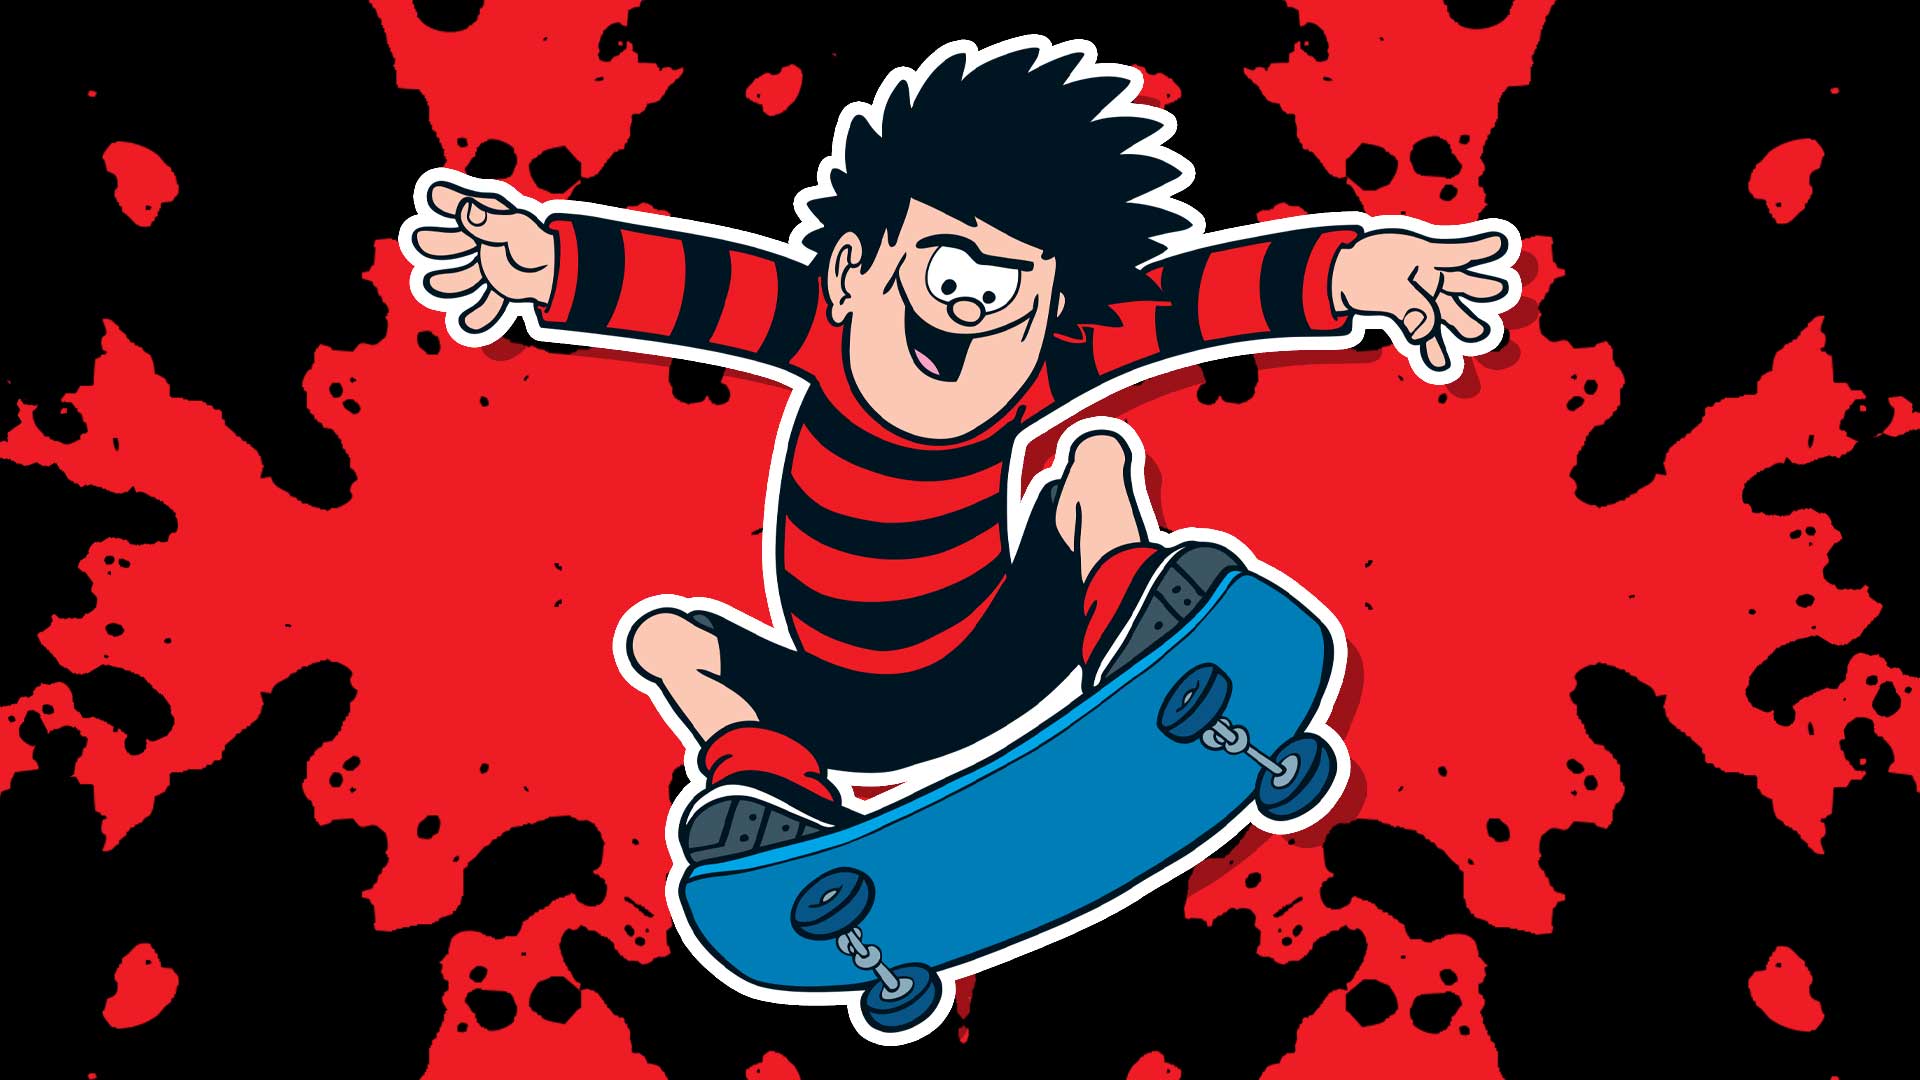 Dennis skateboarding 